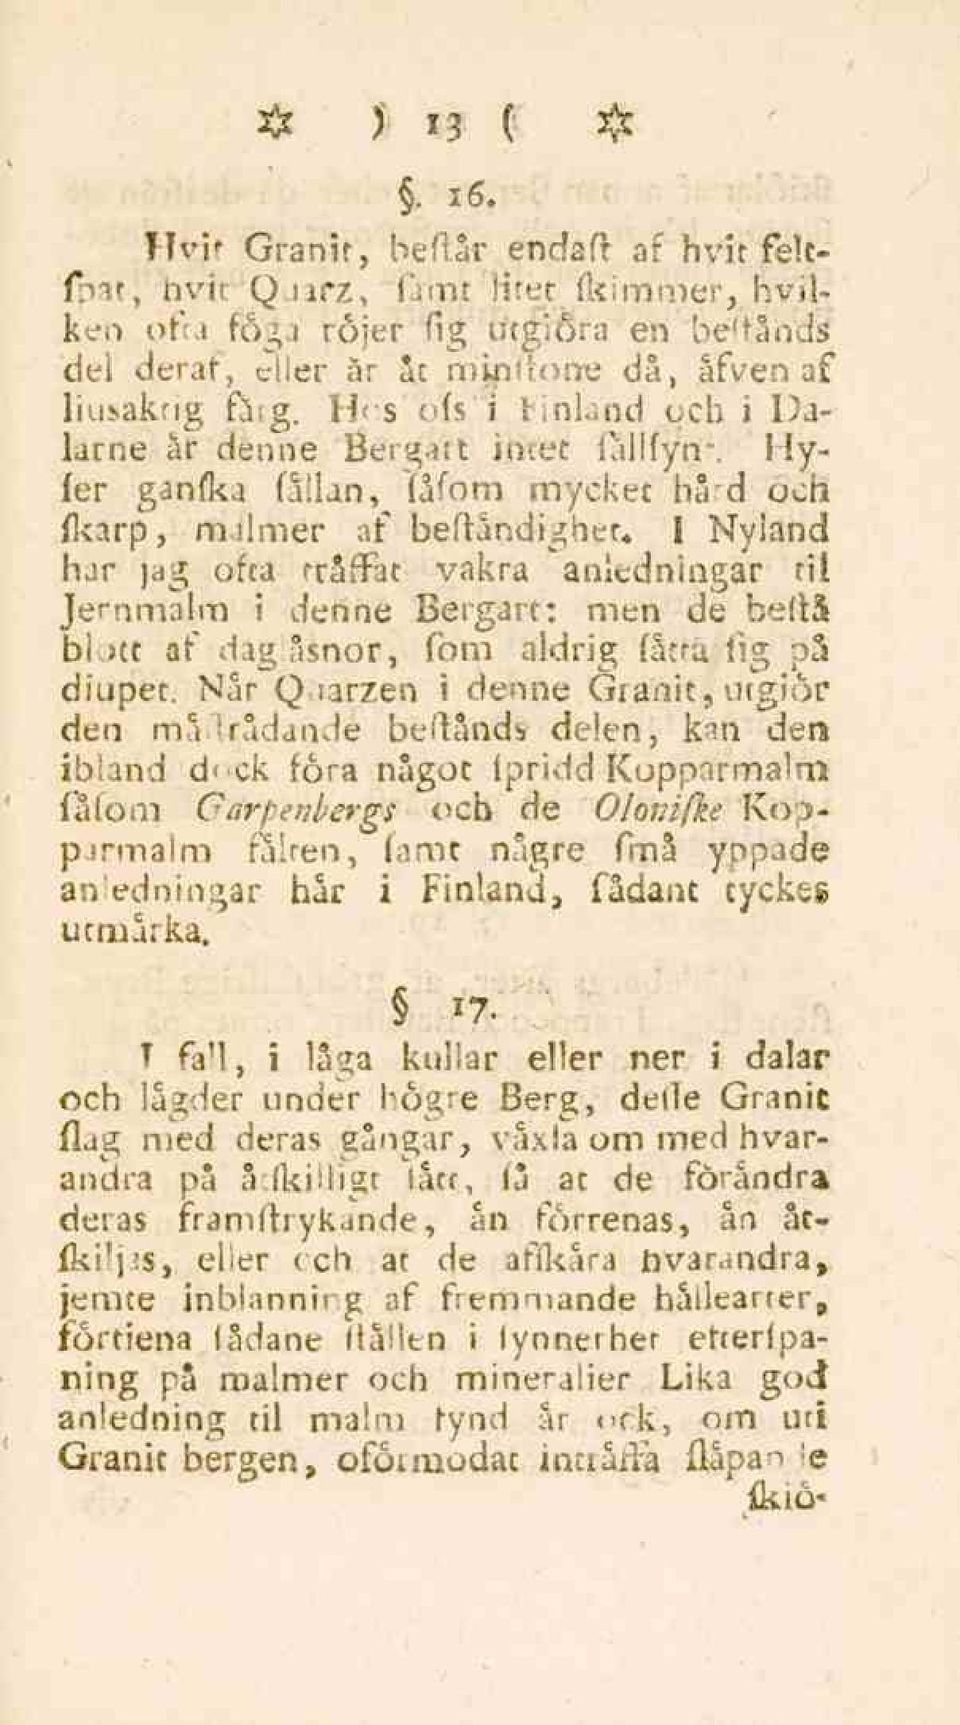 1 Nyland har jag ofta rråffat vakra anledningar "il Jernmalm i denne Bergart: men de beftå b! )tt af dag åsnor, fom aldrig fatta fig på diupet.